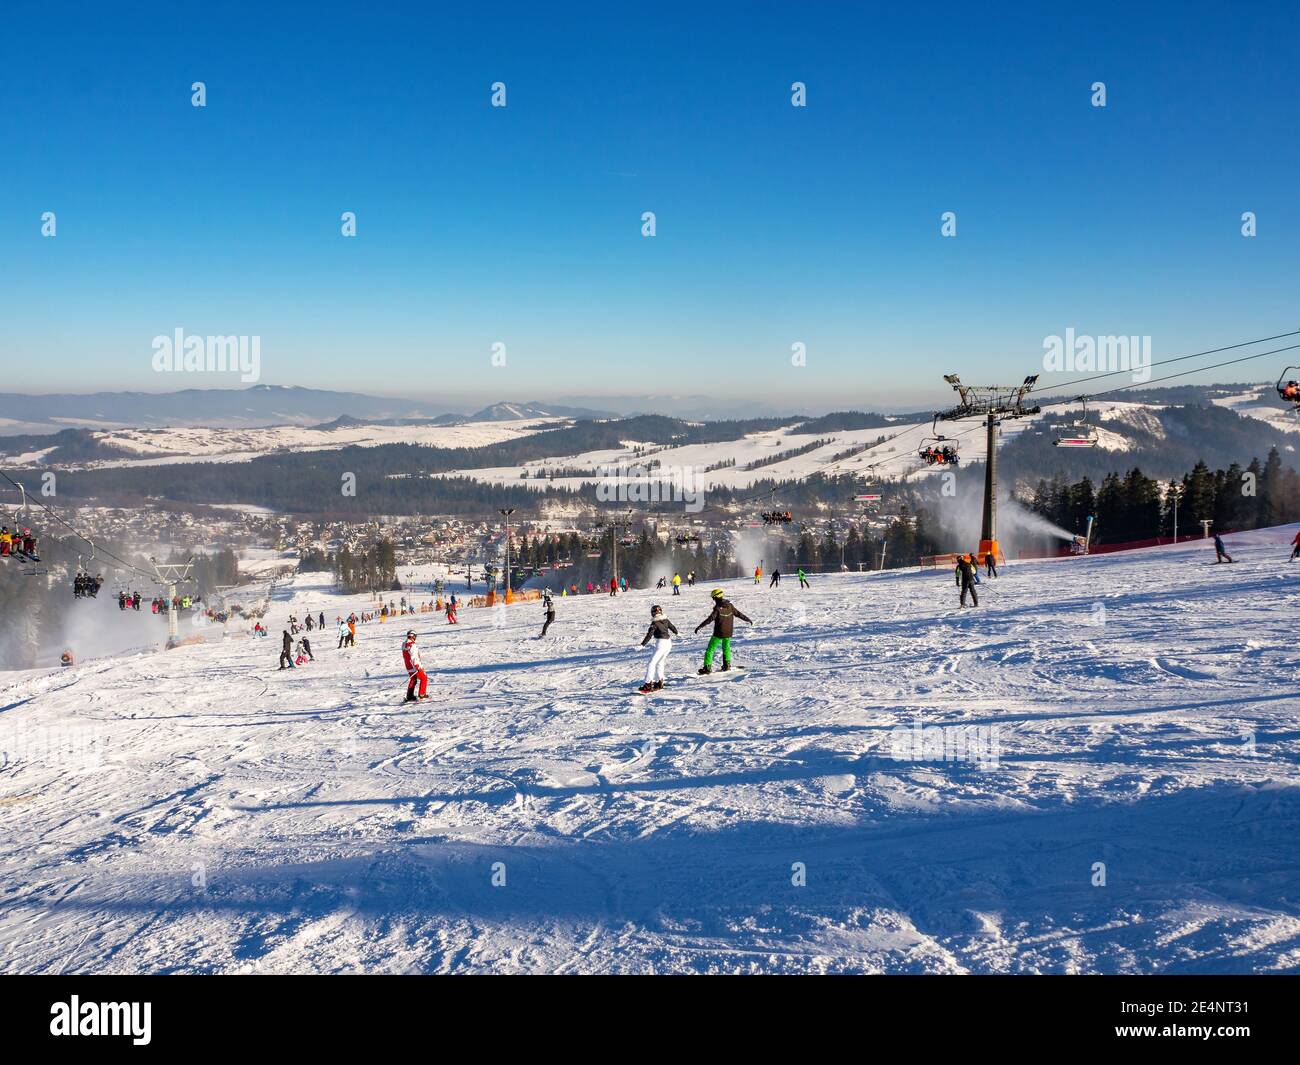 Skipisten, Sessellifte, Skifahrer und Snowboarder im Skigebiet Bialka Tatrzanska in Polen im Winter. Schneekanonen in Aktion Stockfoto